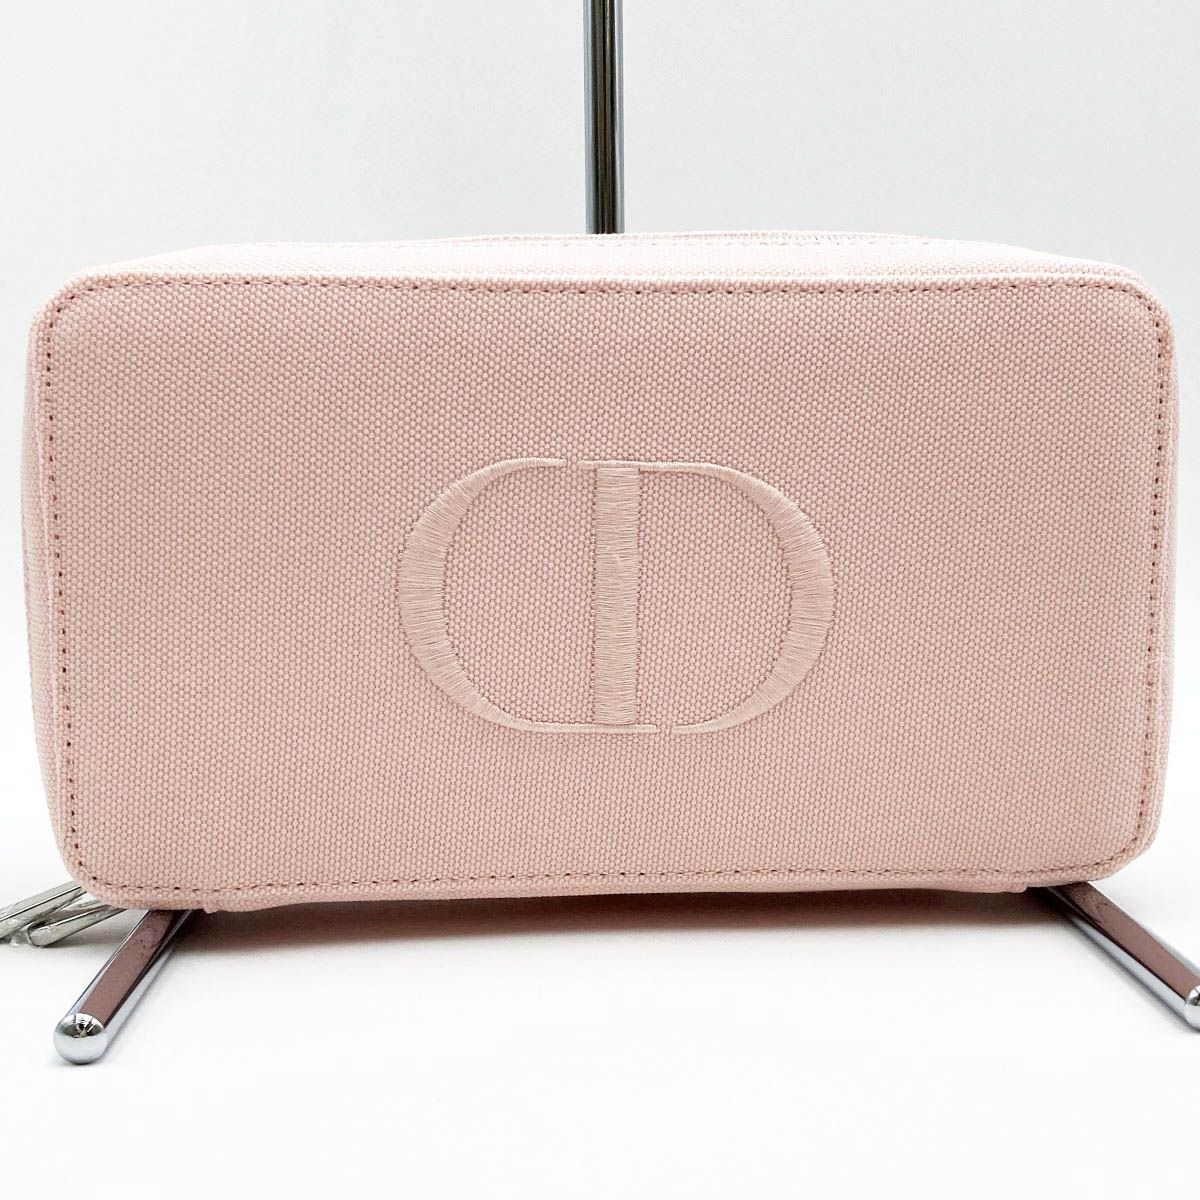 未使用品 Dior ディオール ノベルティ ポーチ バニティポーチ 小物入れ ピンク キャンバス レディース C400172073 美品 USED